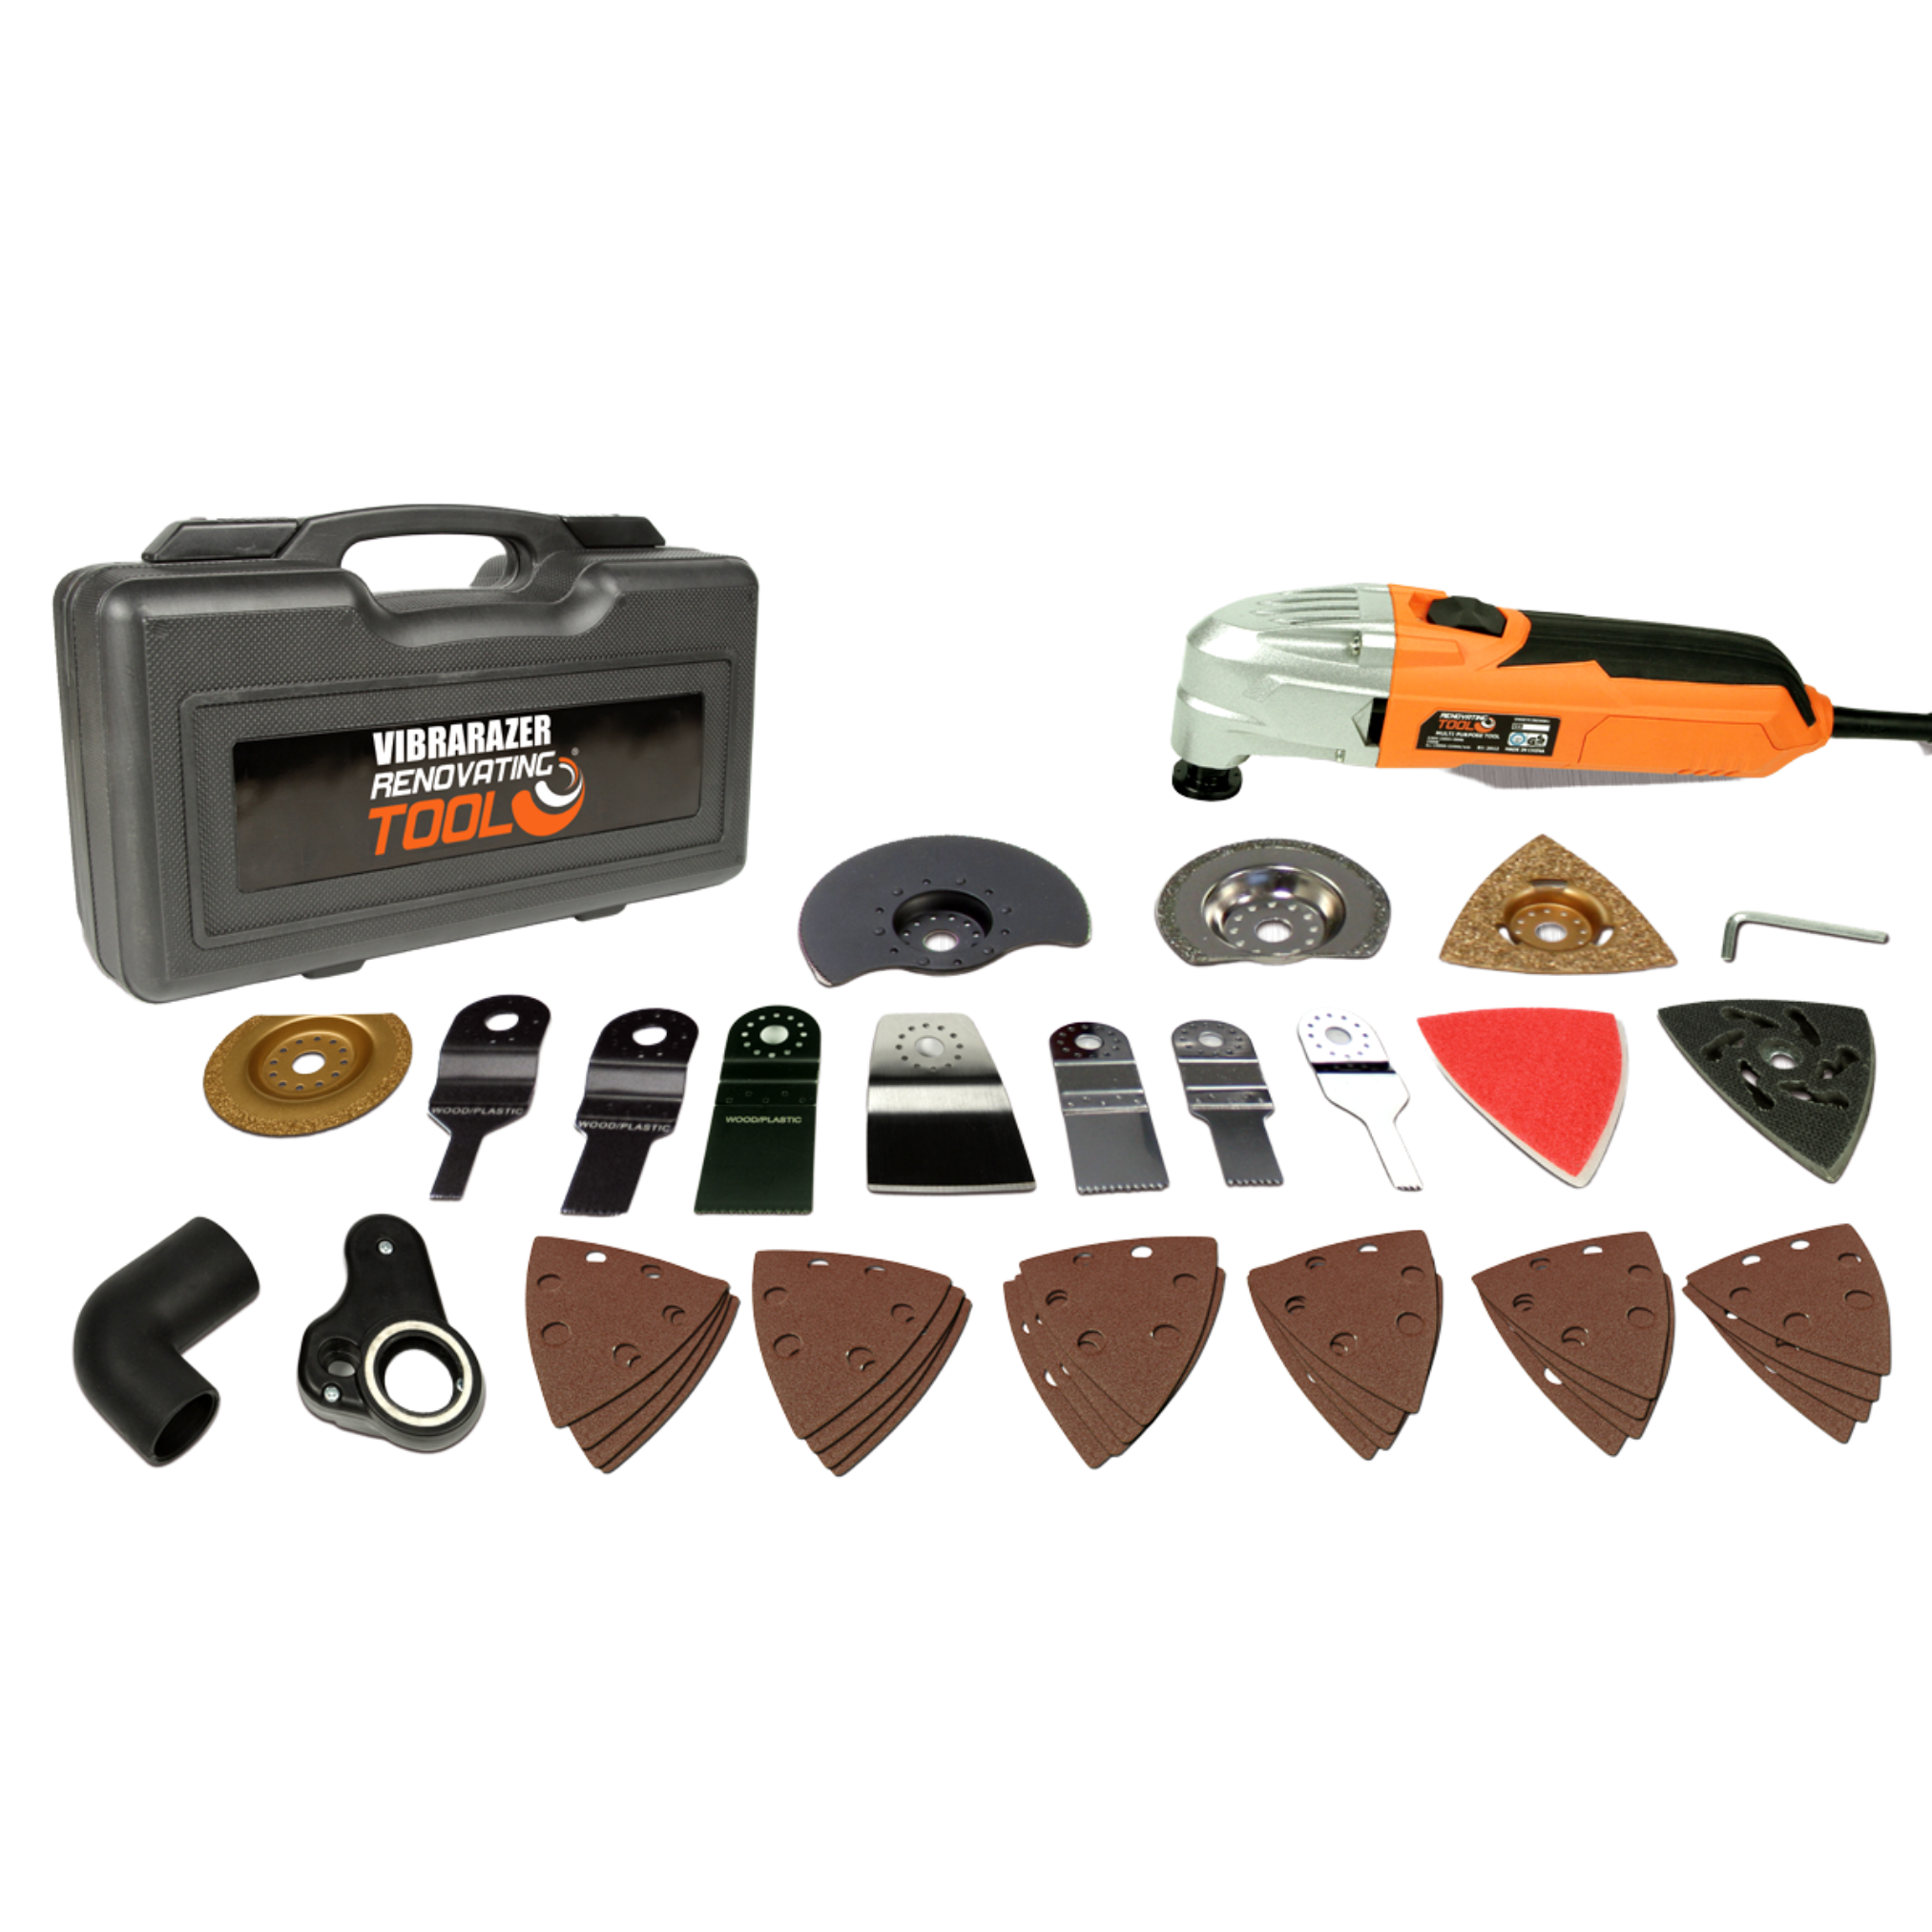 INDUSTEX Vibrarazer mit Tool® 40 Series Pro - Plus Zubehörteilen Renovating Multifunktionswerkzeug, orange